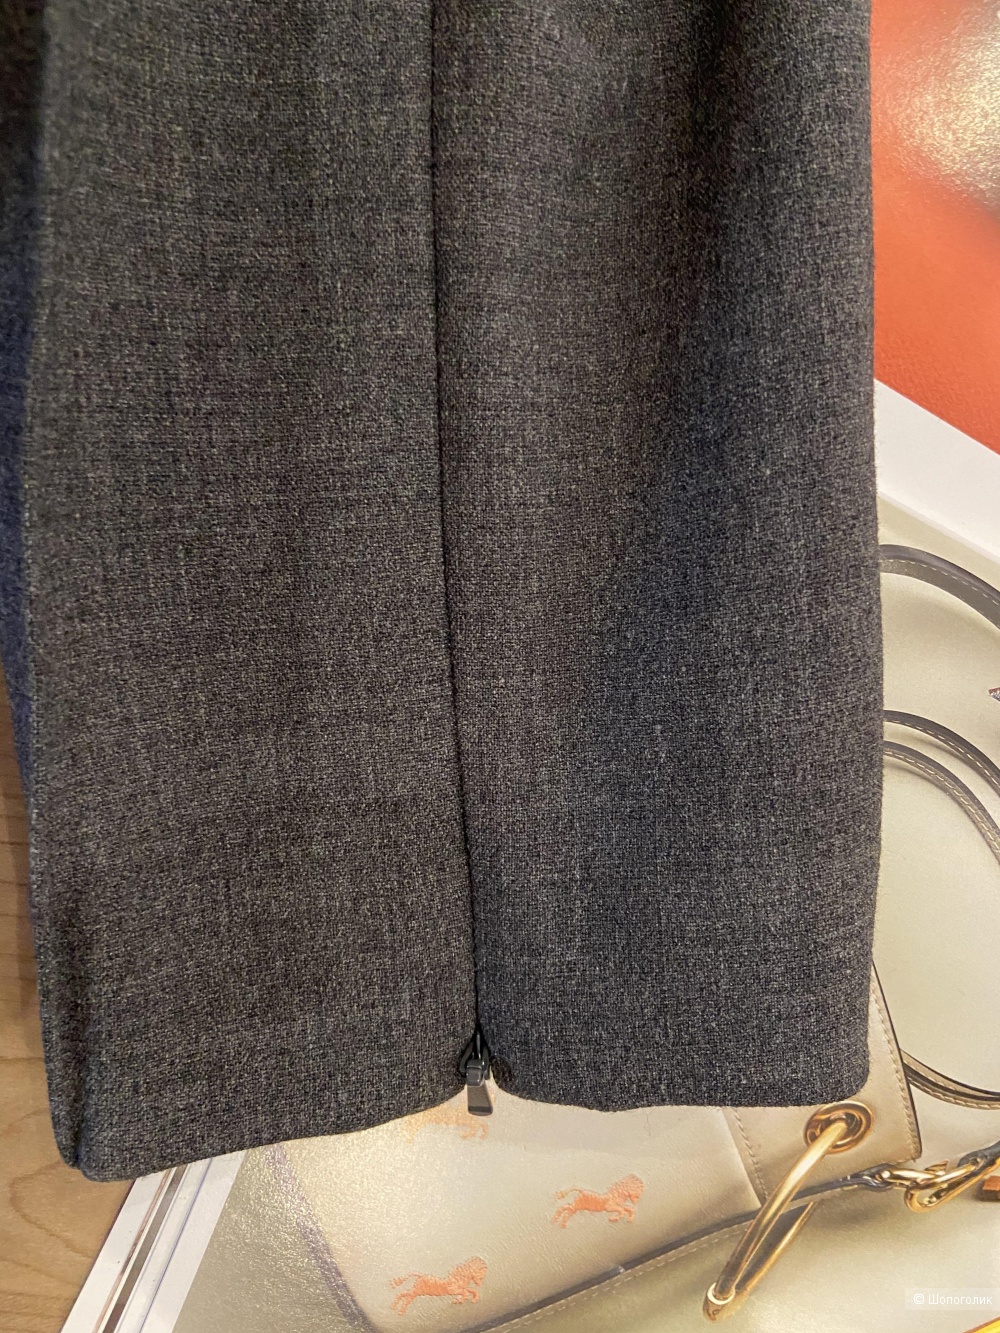 Серые облегающие брюки Michael Kors размер XS